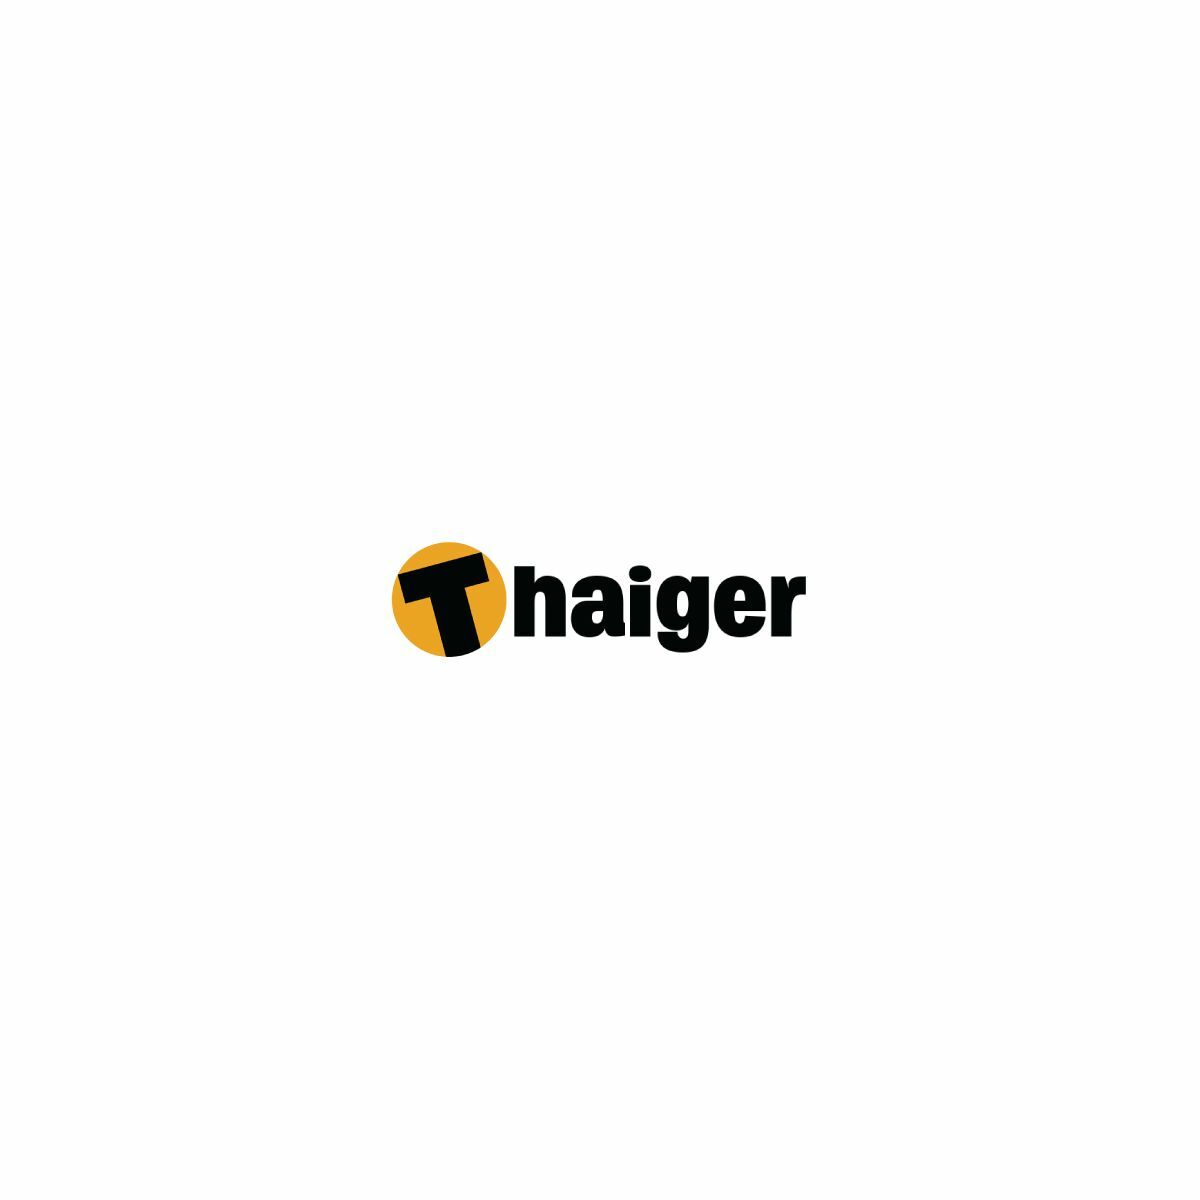 Thaiger